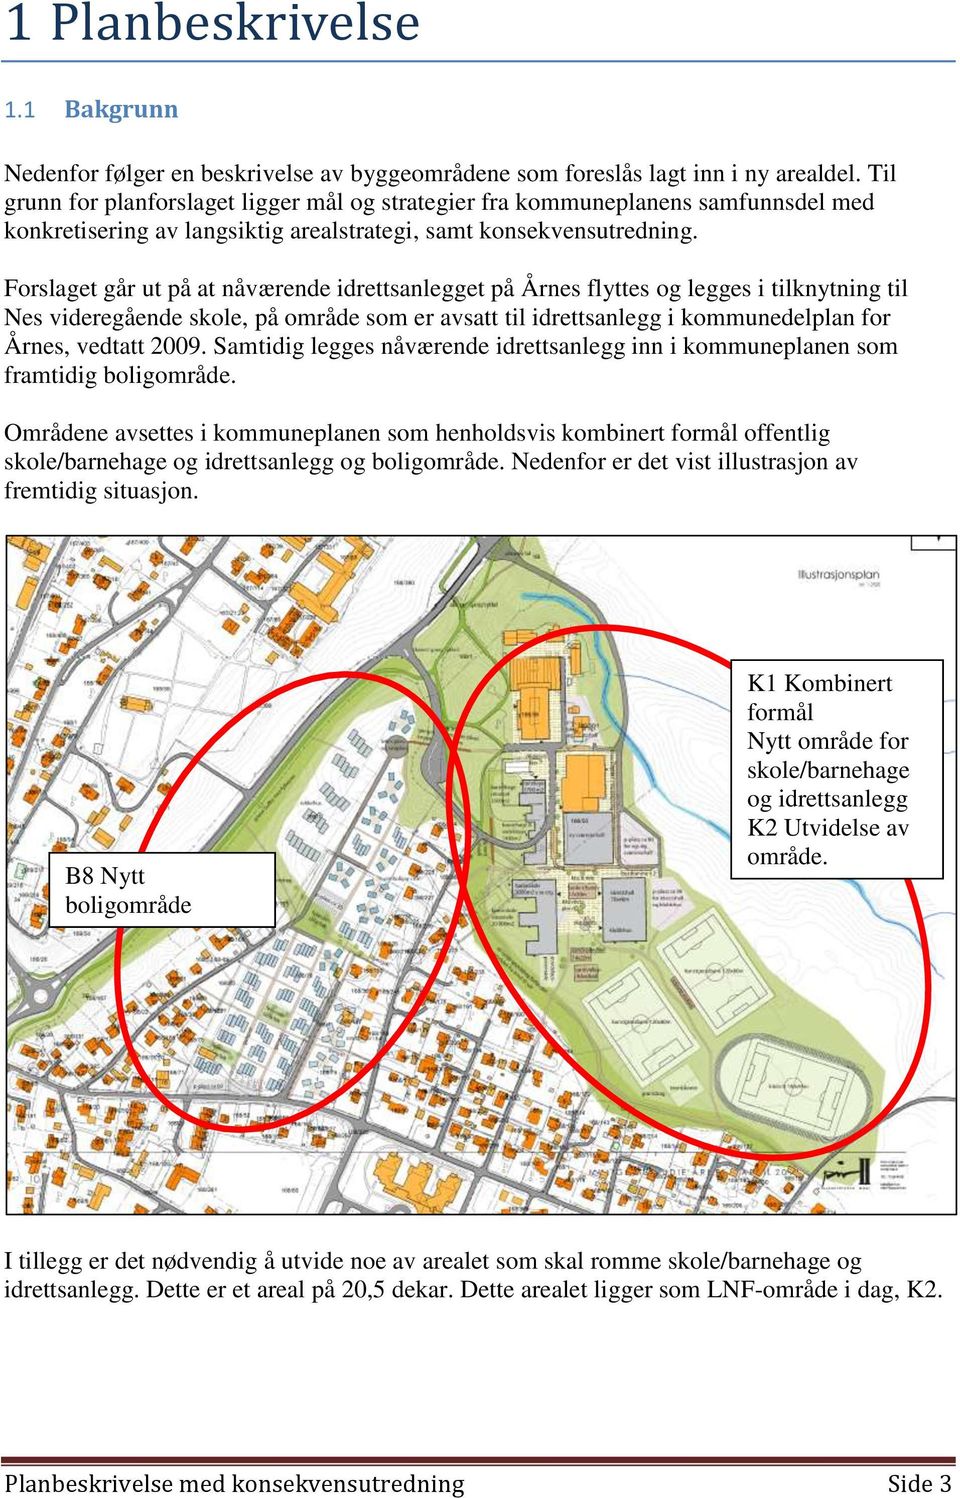 Forslaget går ut på at nåværende idrettsanlegget på Årnes flyttes og legges i tilknytning til Nes videregående skole, på område som er avsatt til idrettsanlegg i kommunedelplan for Årnes, vedtatt